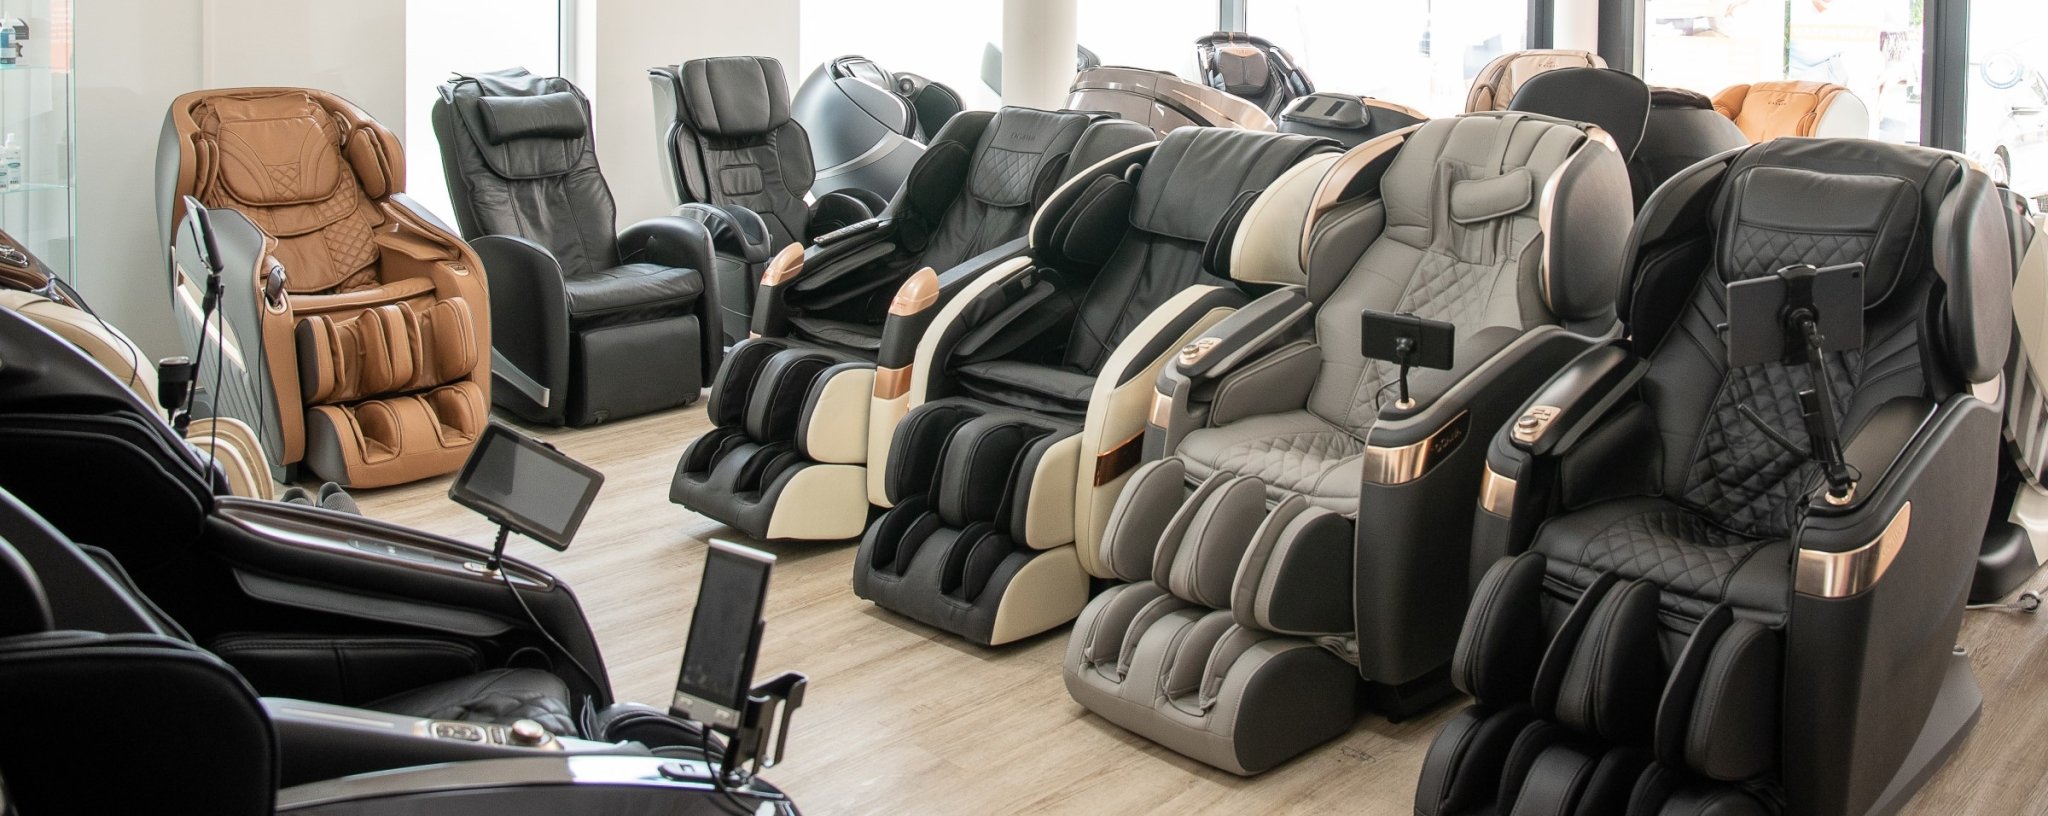 Найбільша в Німеччині та Європі виставка масажних крісел